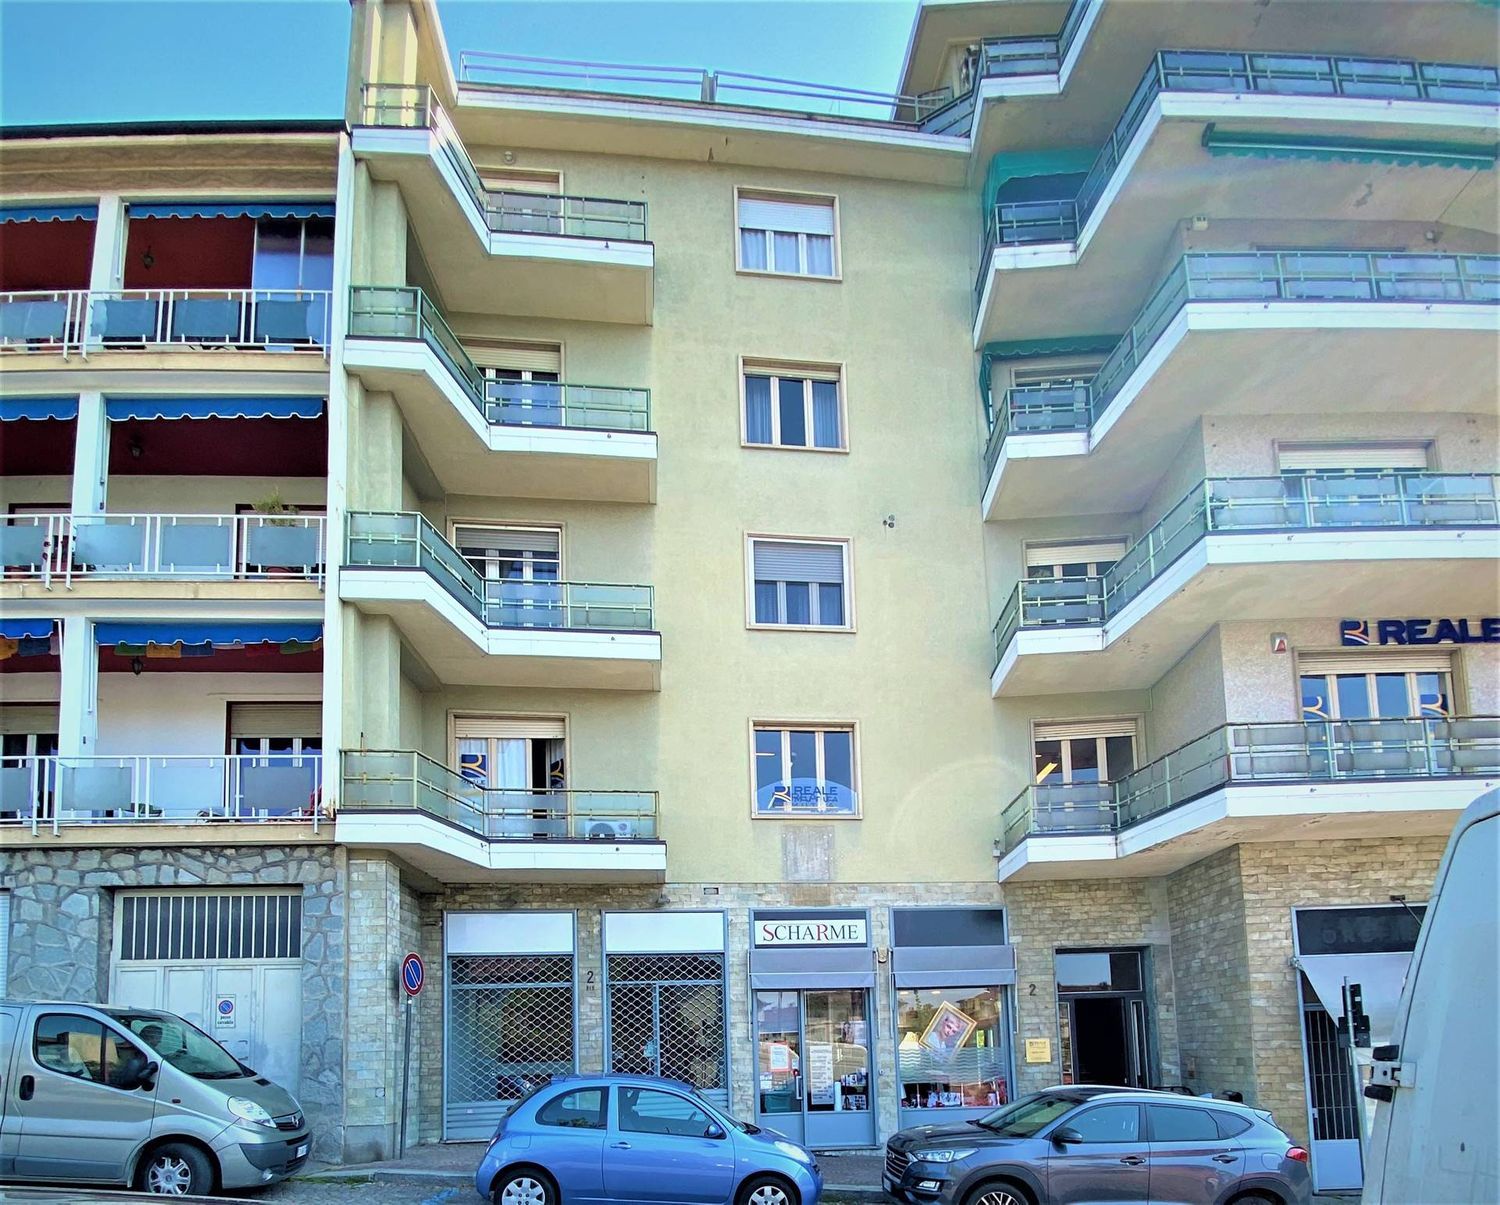 Immobile Commerciale in affitto a Chieri, 9999 locali, prezzo € 550 | PortaleAgenzieImmobiliari.it